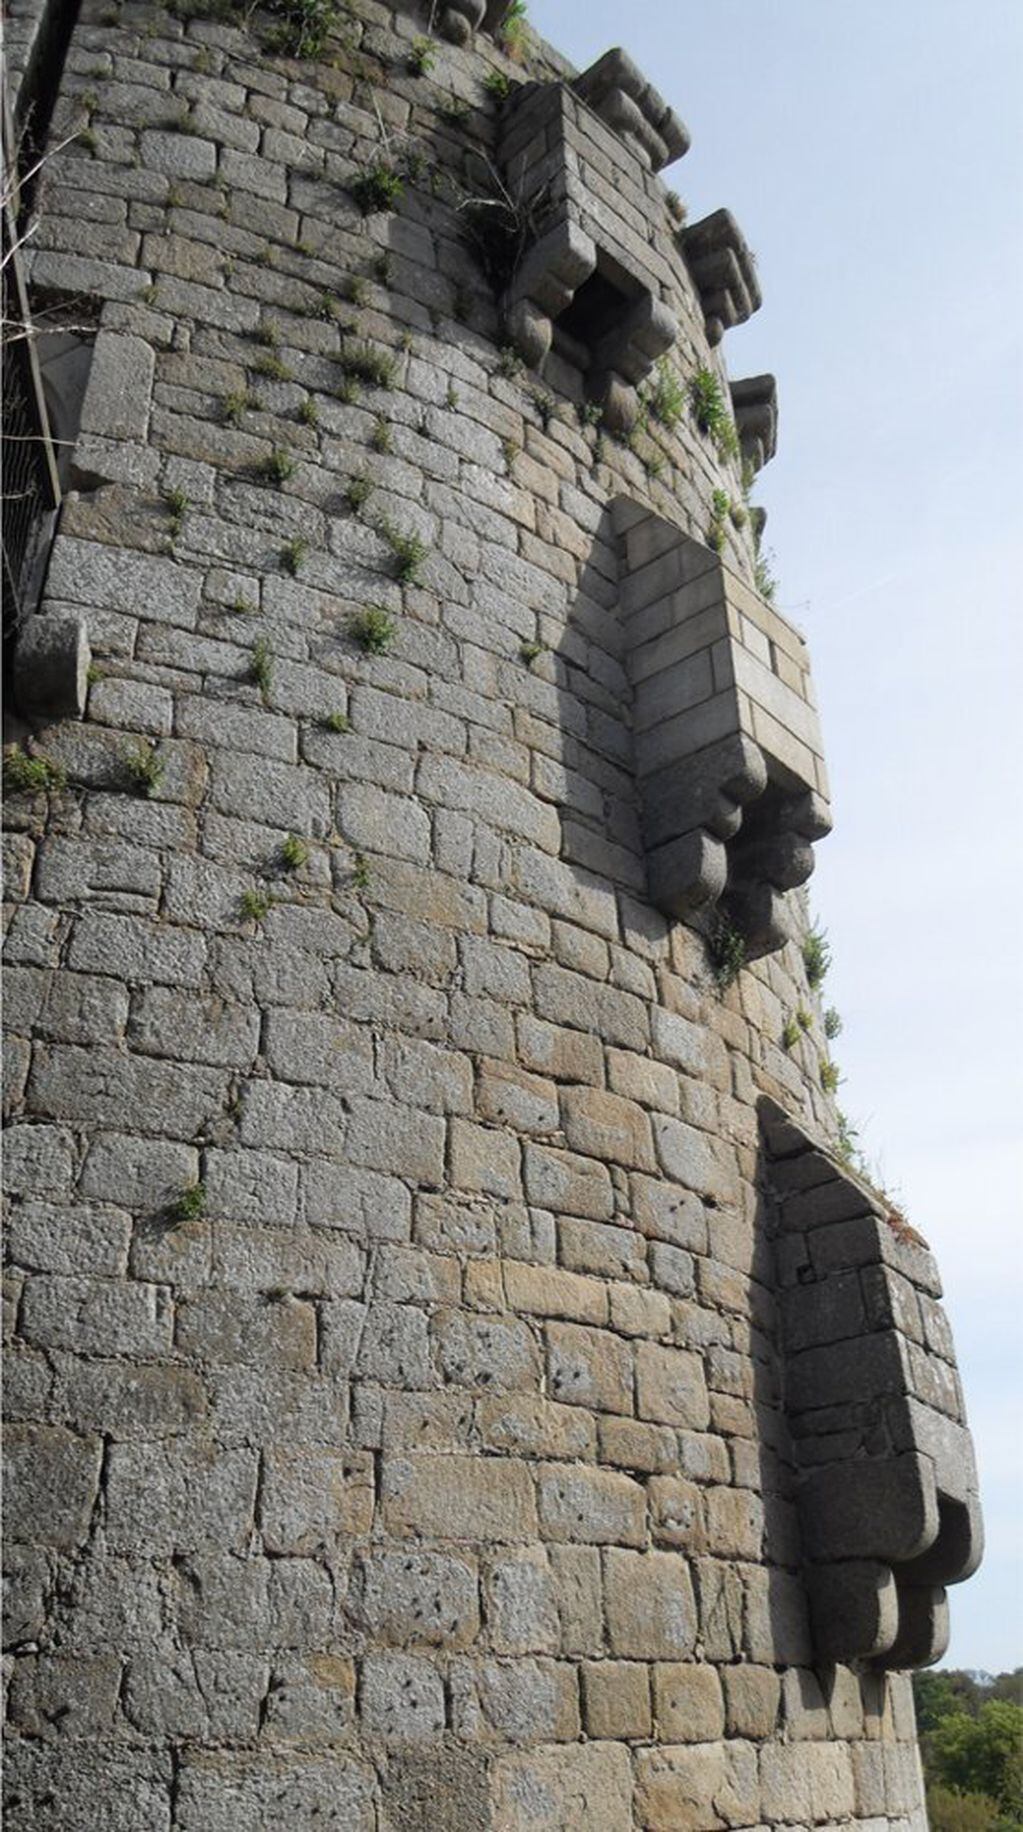 Torre con salidass para las letrinas. Cortesia de Geopizza


